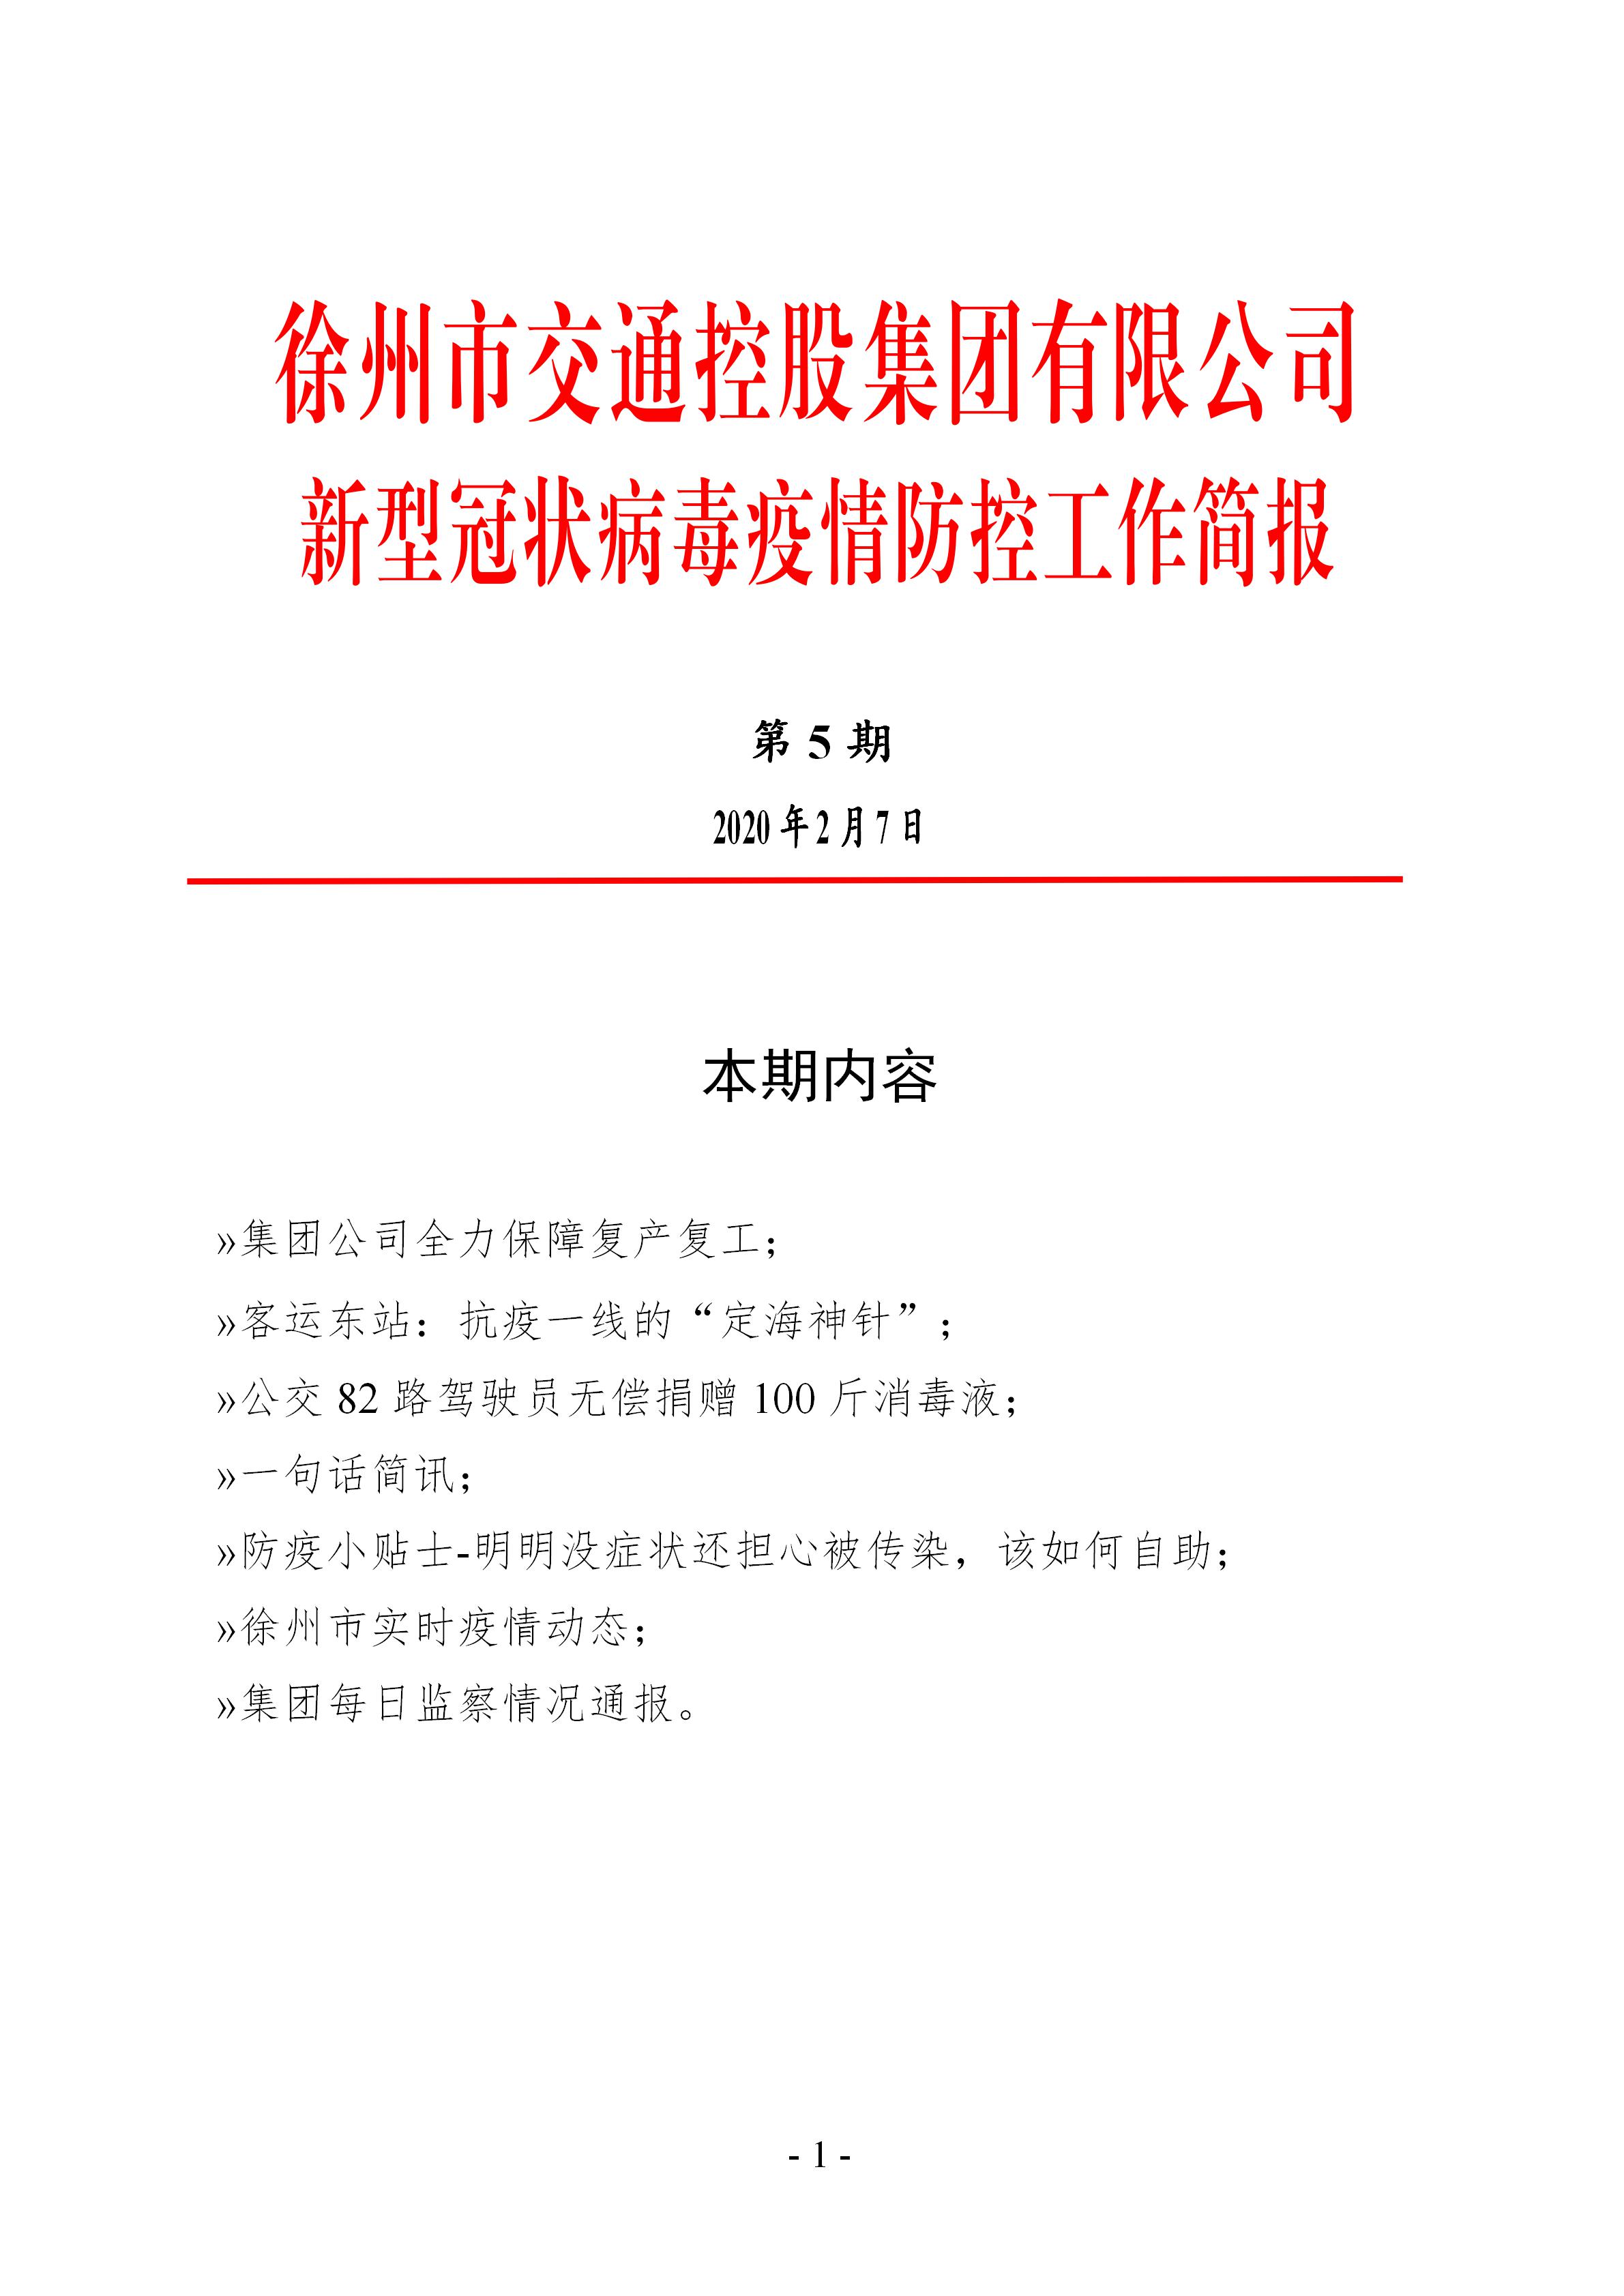 （第五期2.7）徐州市交通控股集团新型冠状病毒防疫防控工作简报